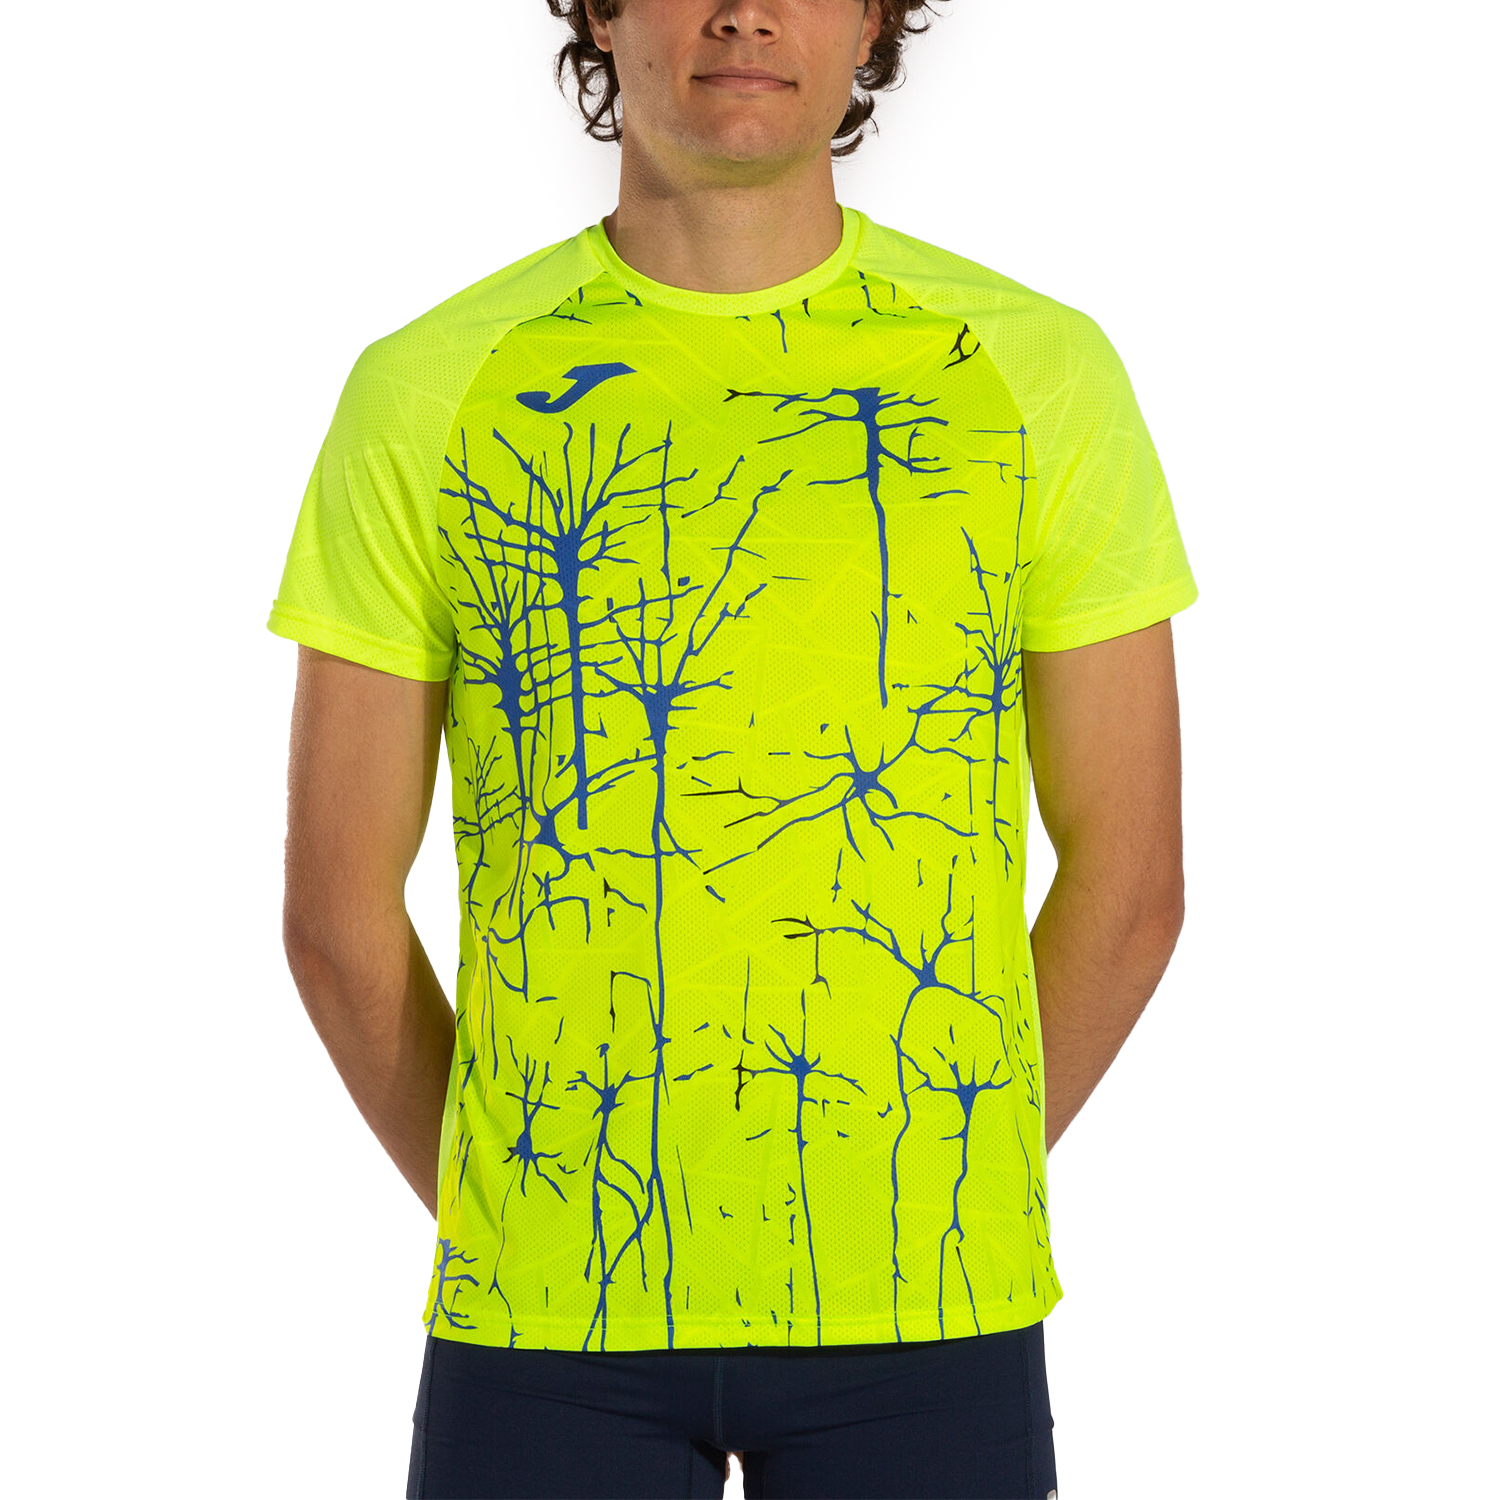 Joma Elite IX Camiseta - Fluor Yellow